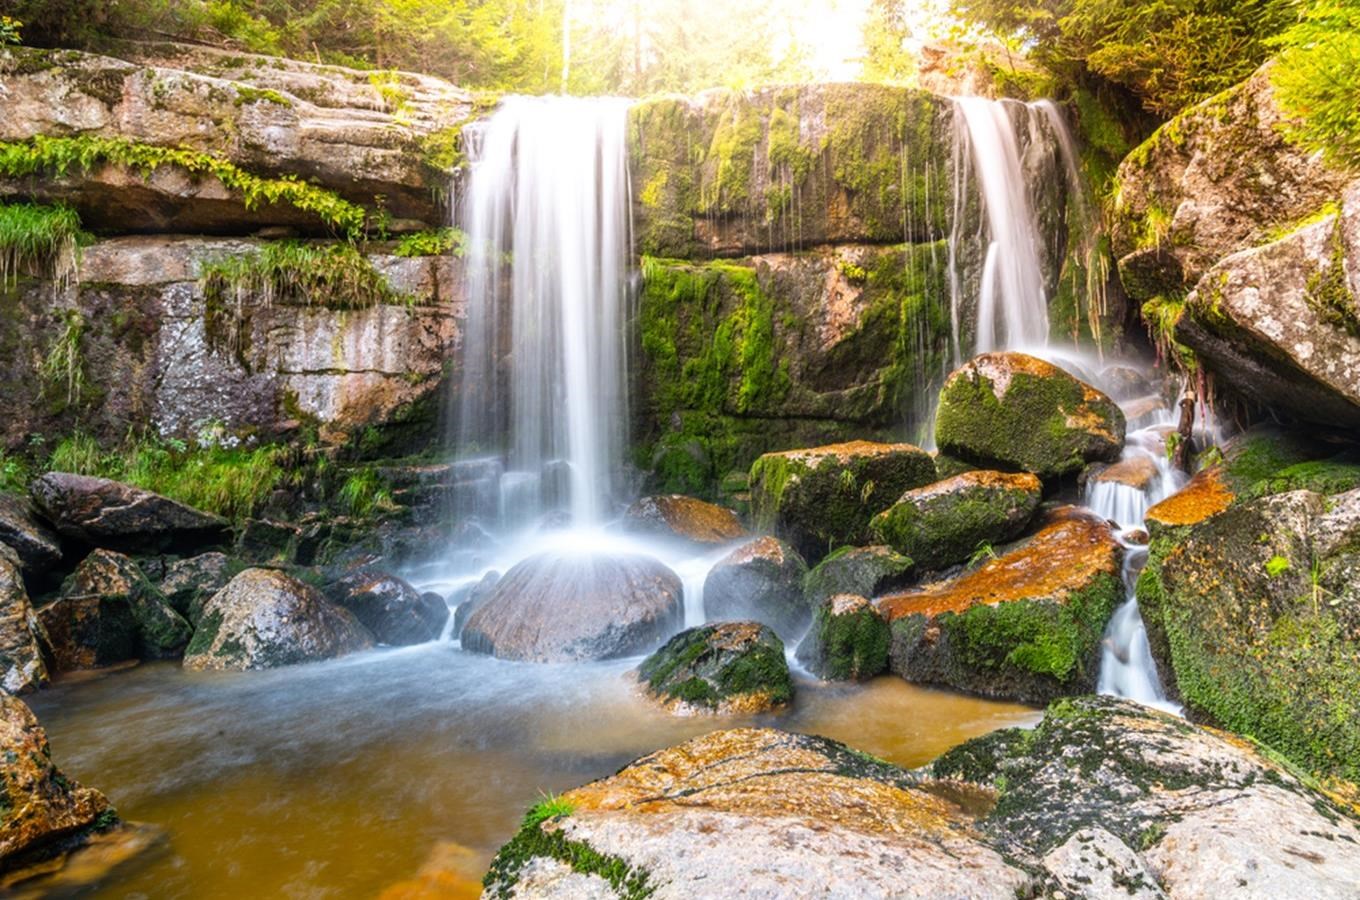 Vodopády Jedlová - kaskáda na Jedlovém potoce v Jizerských horách